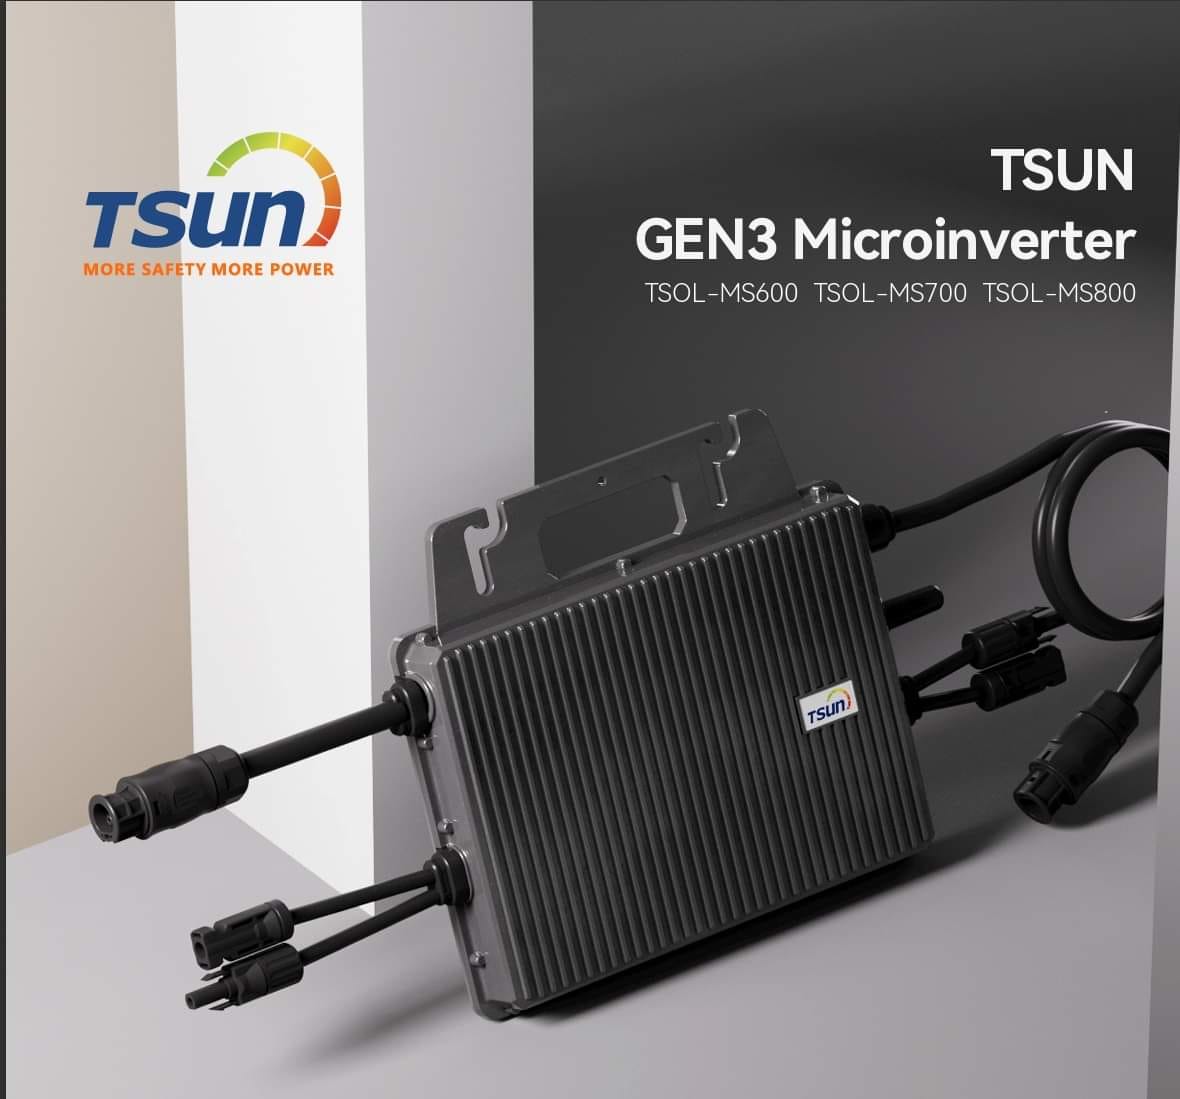 Bringen Sie Ihren Mikro-Wechselrichter mit TSUN auf das nächste Level